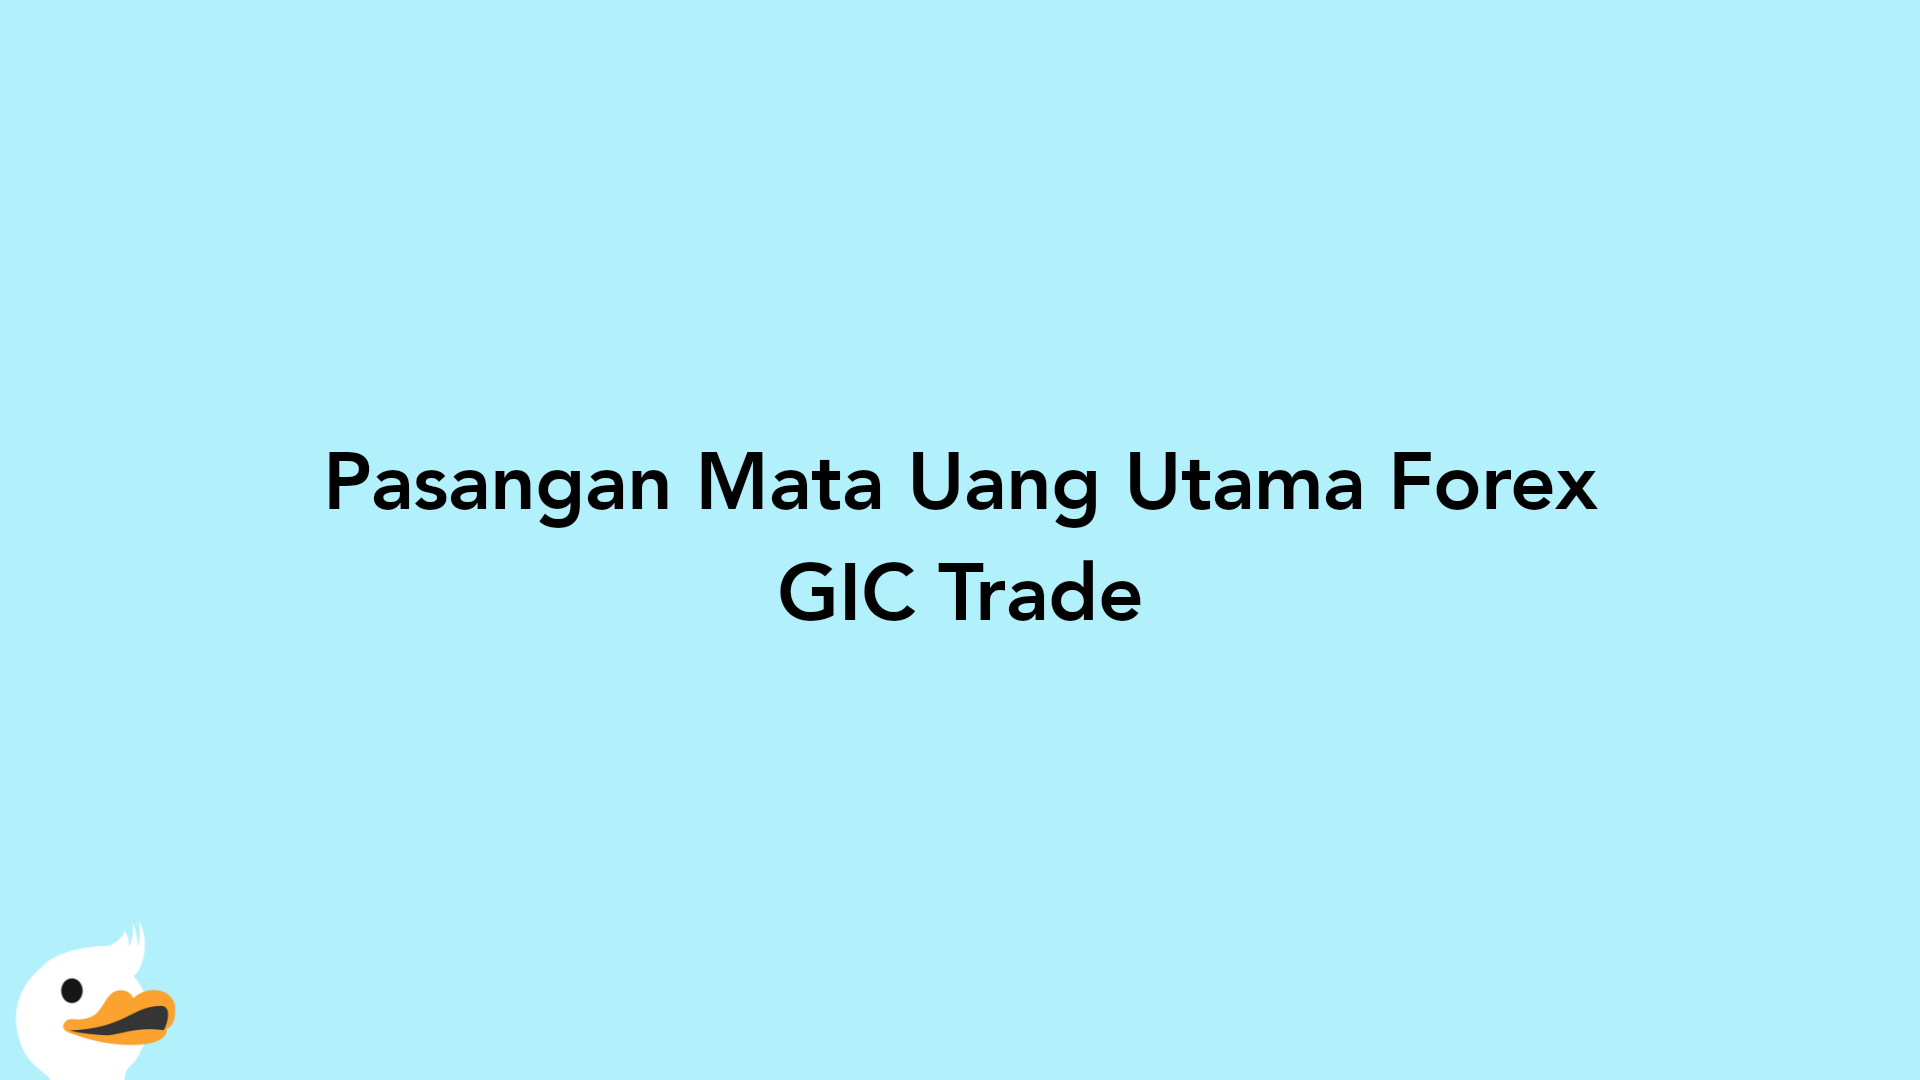 Pasangan Mata Uang Utama Forex GIC Trade